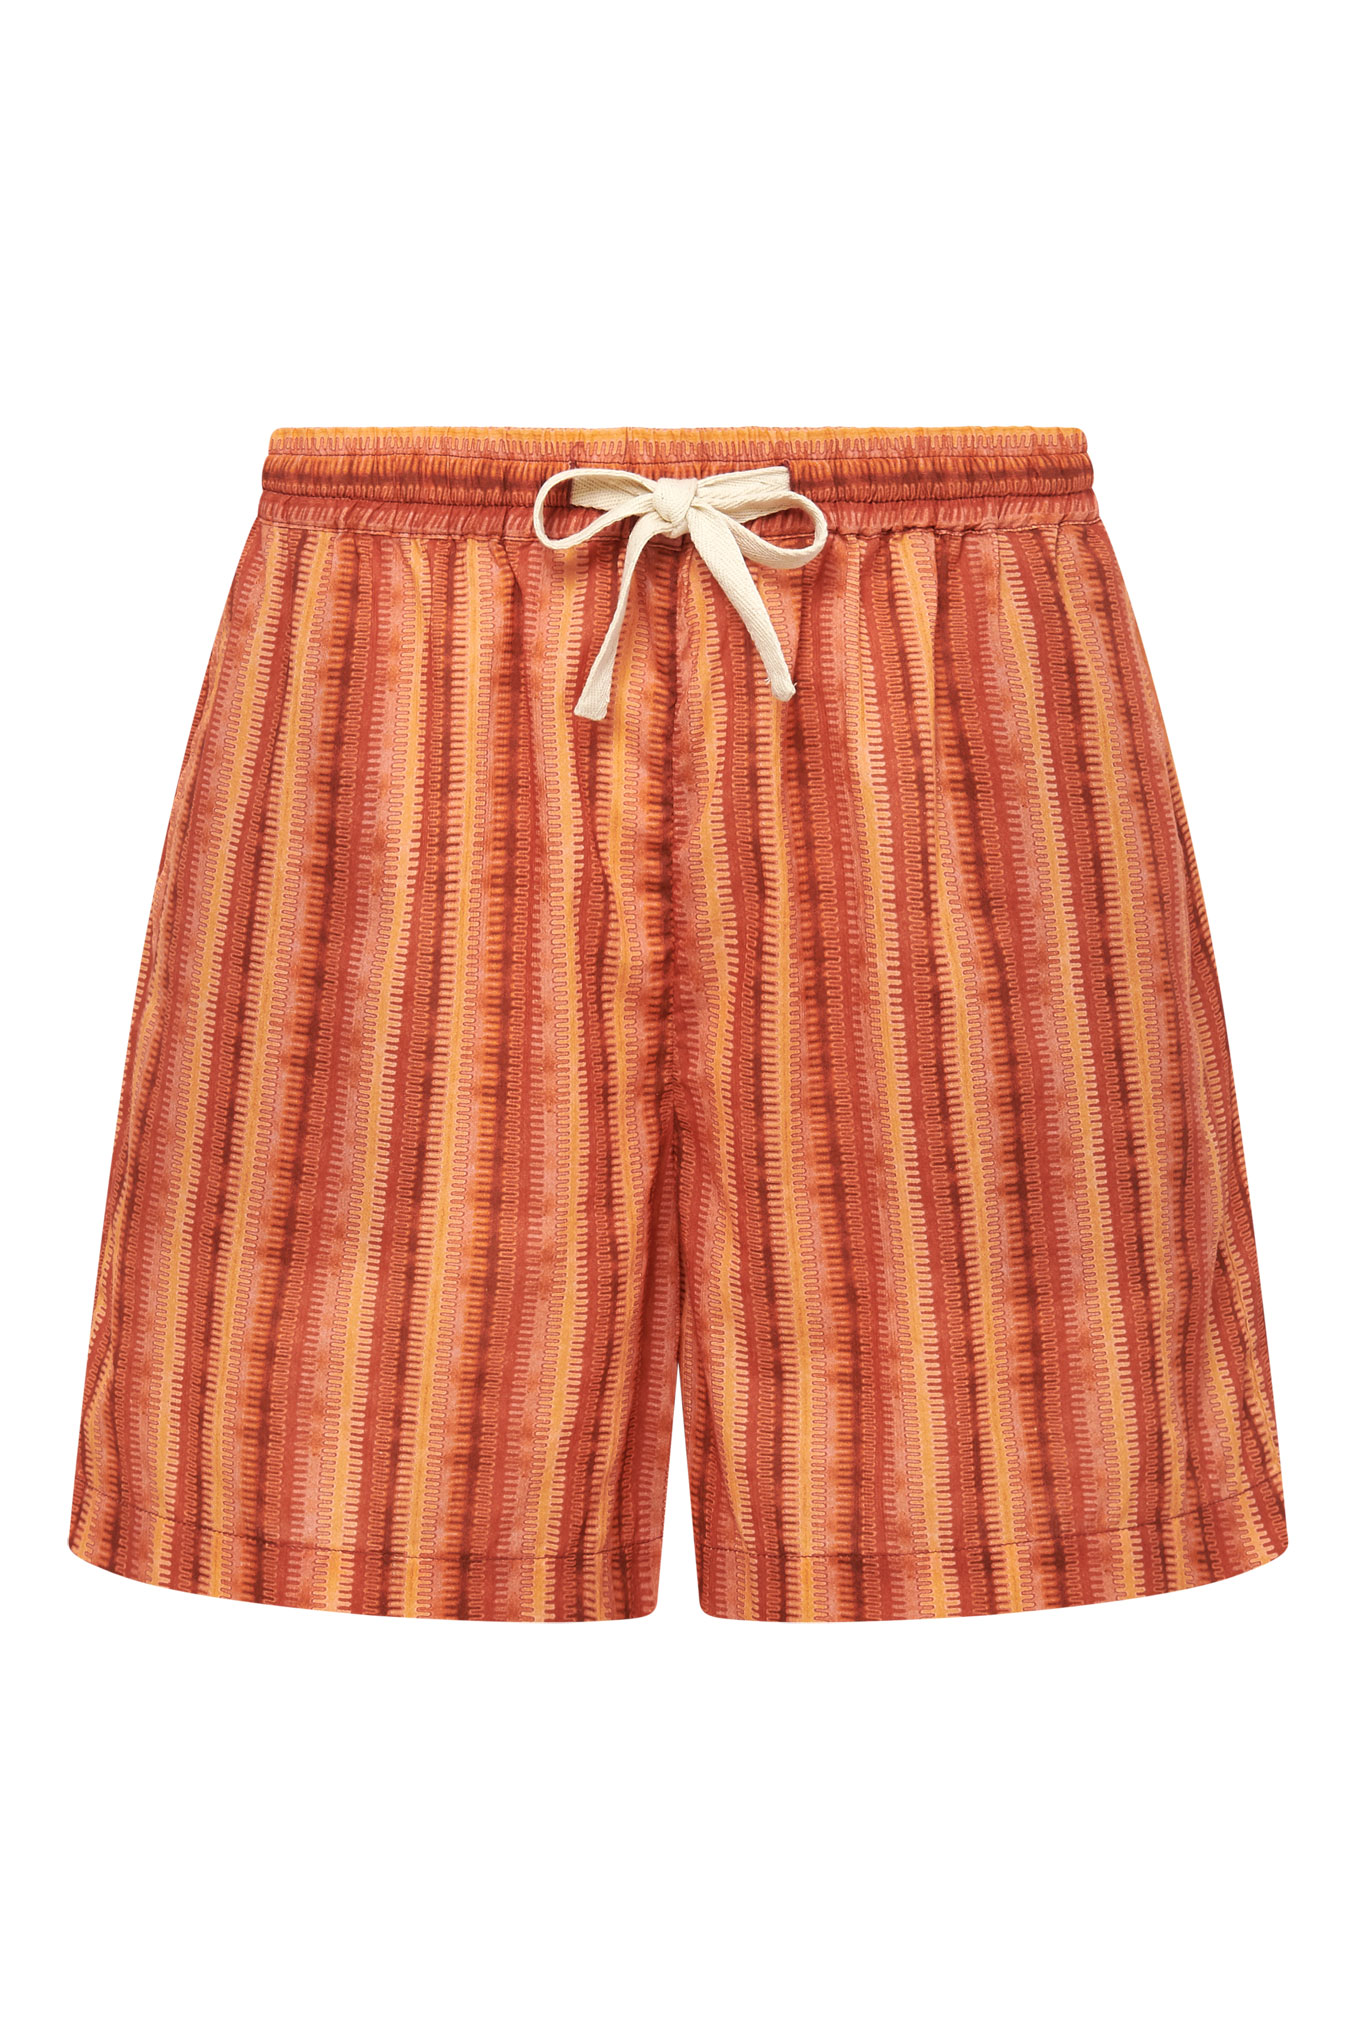 LEAH - Organic Cotton Weave Stripe Peach Shorts